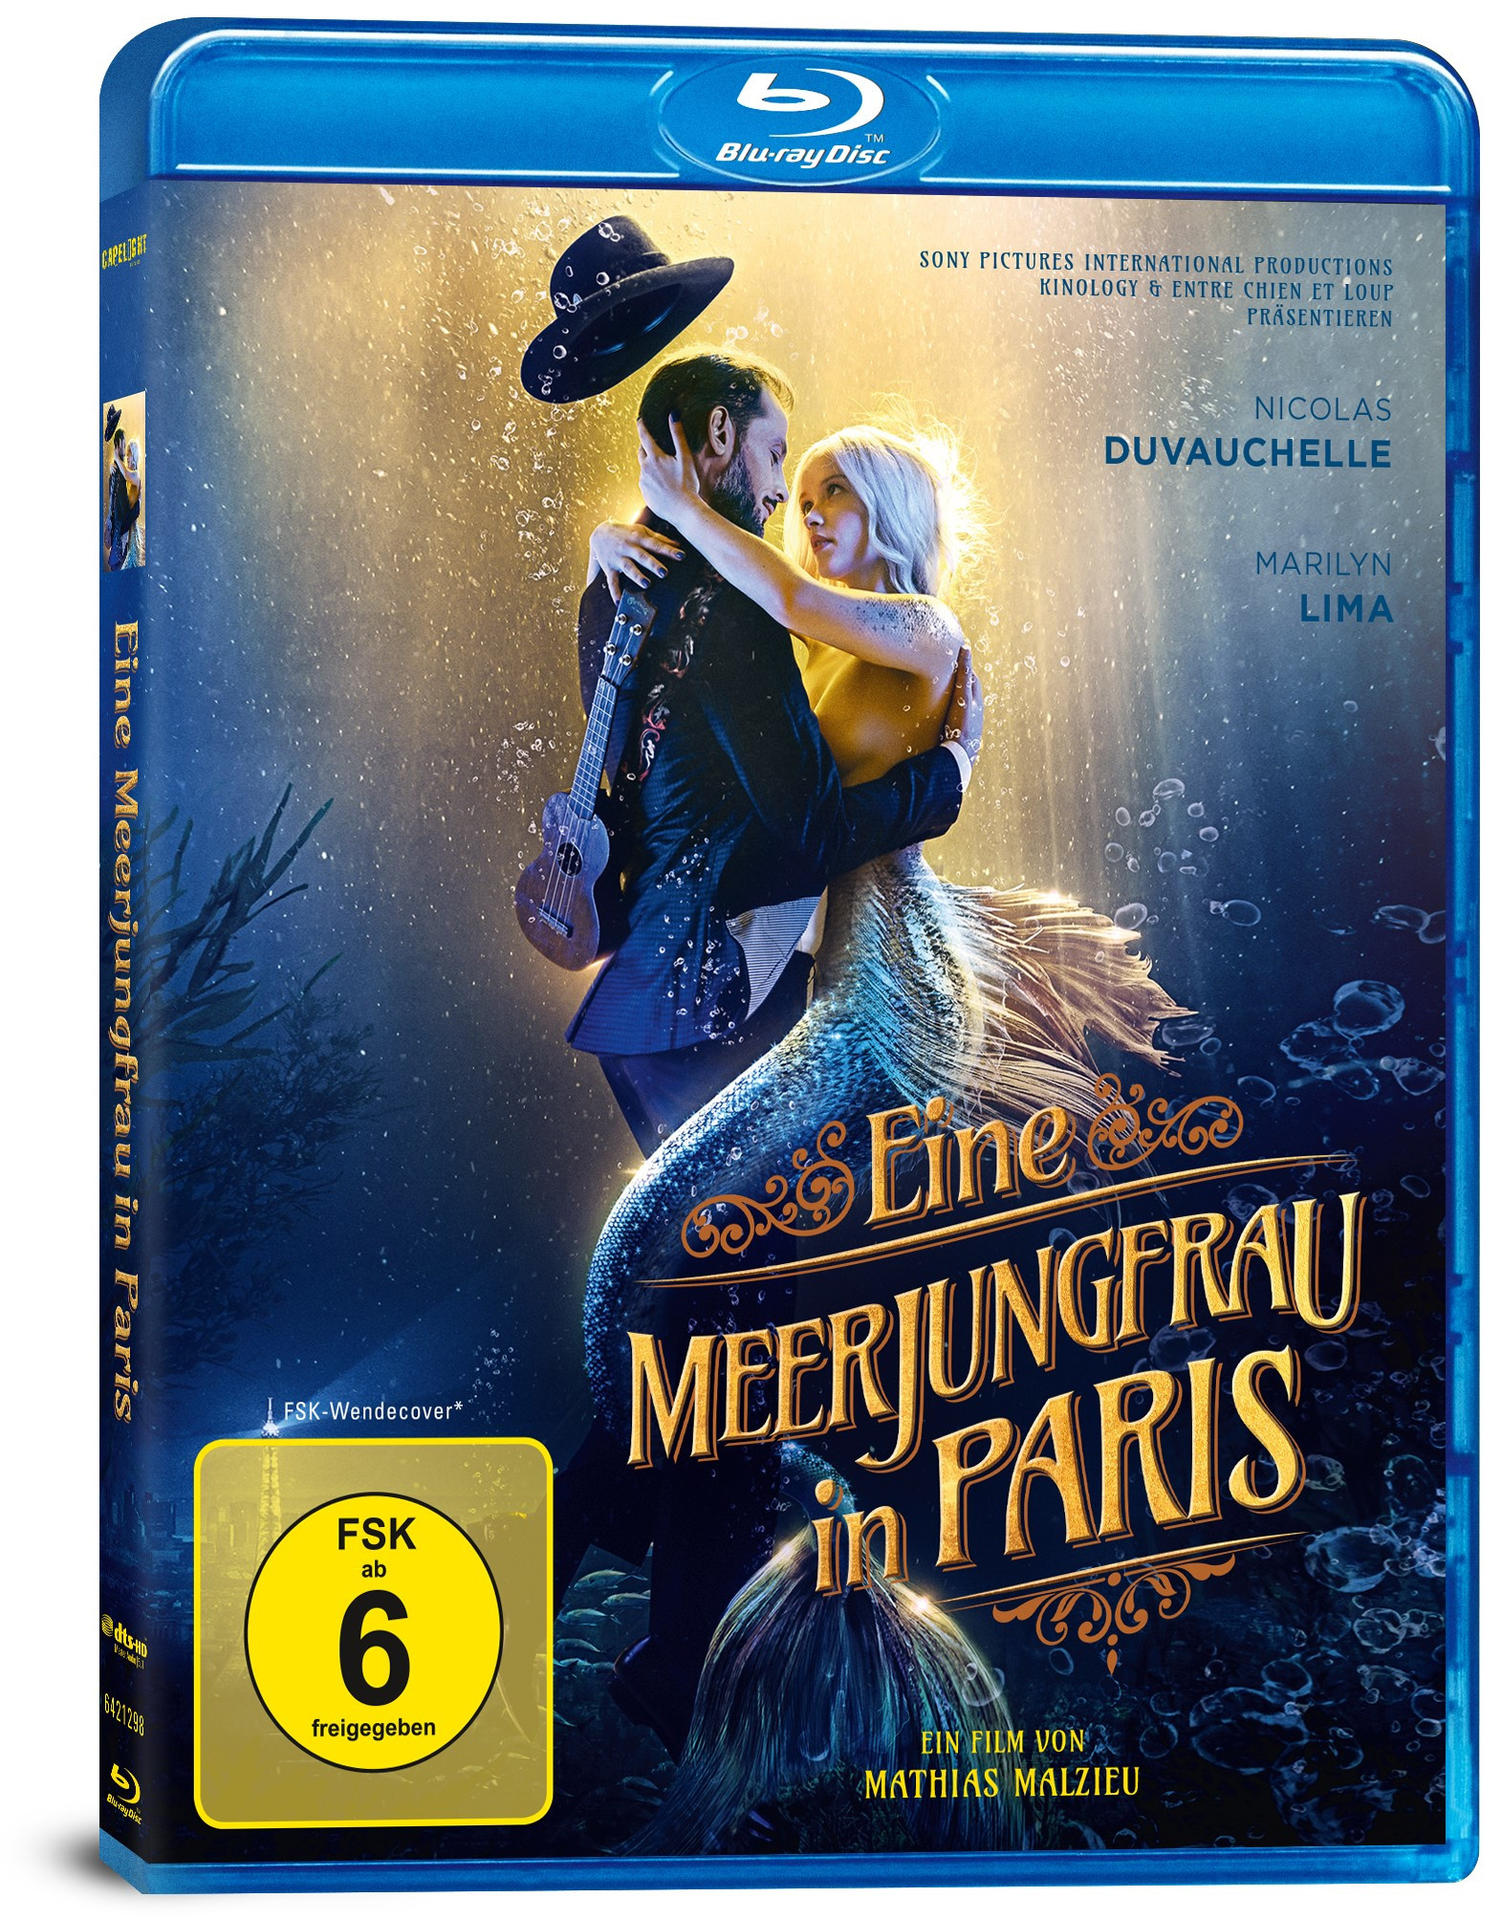 in Blu-ray Meerjungfrau Paris Eine